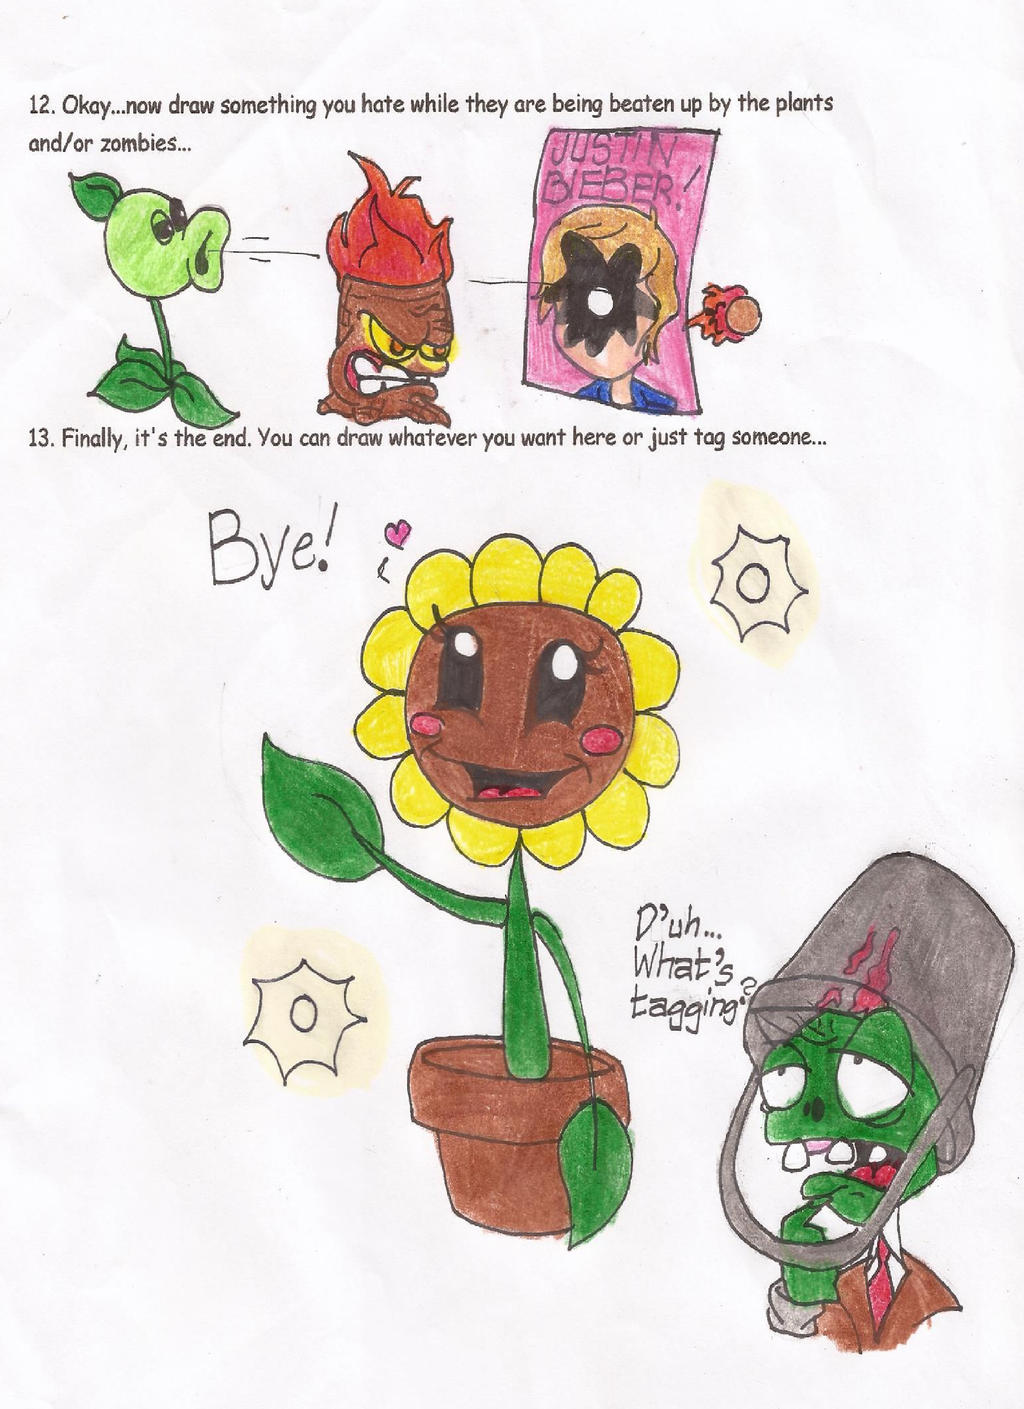 Plants vs. Zombies Meme, Part 4